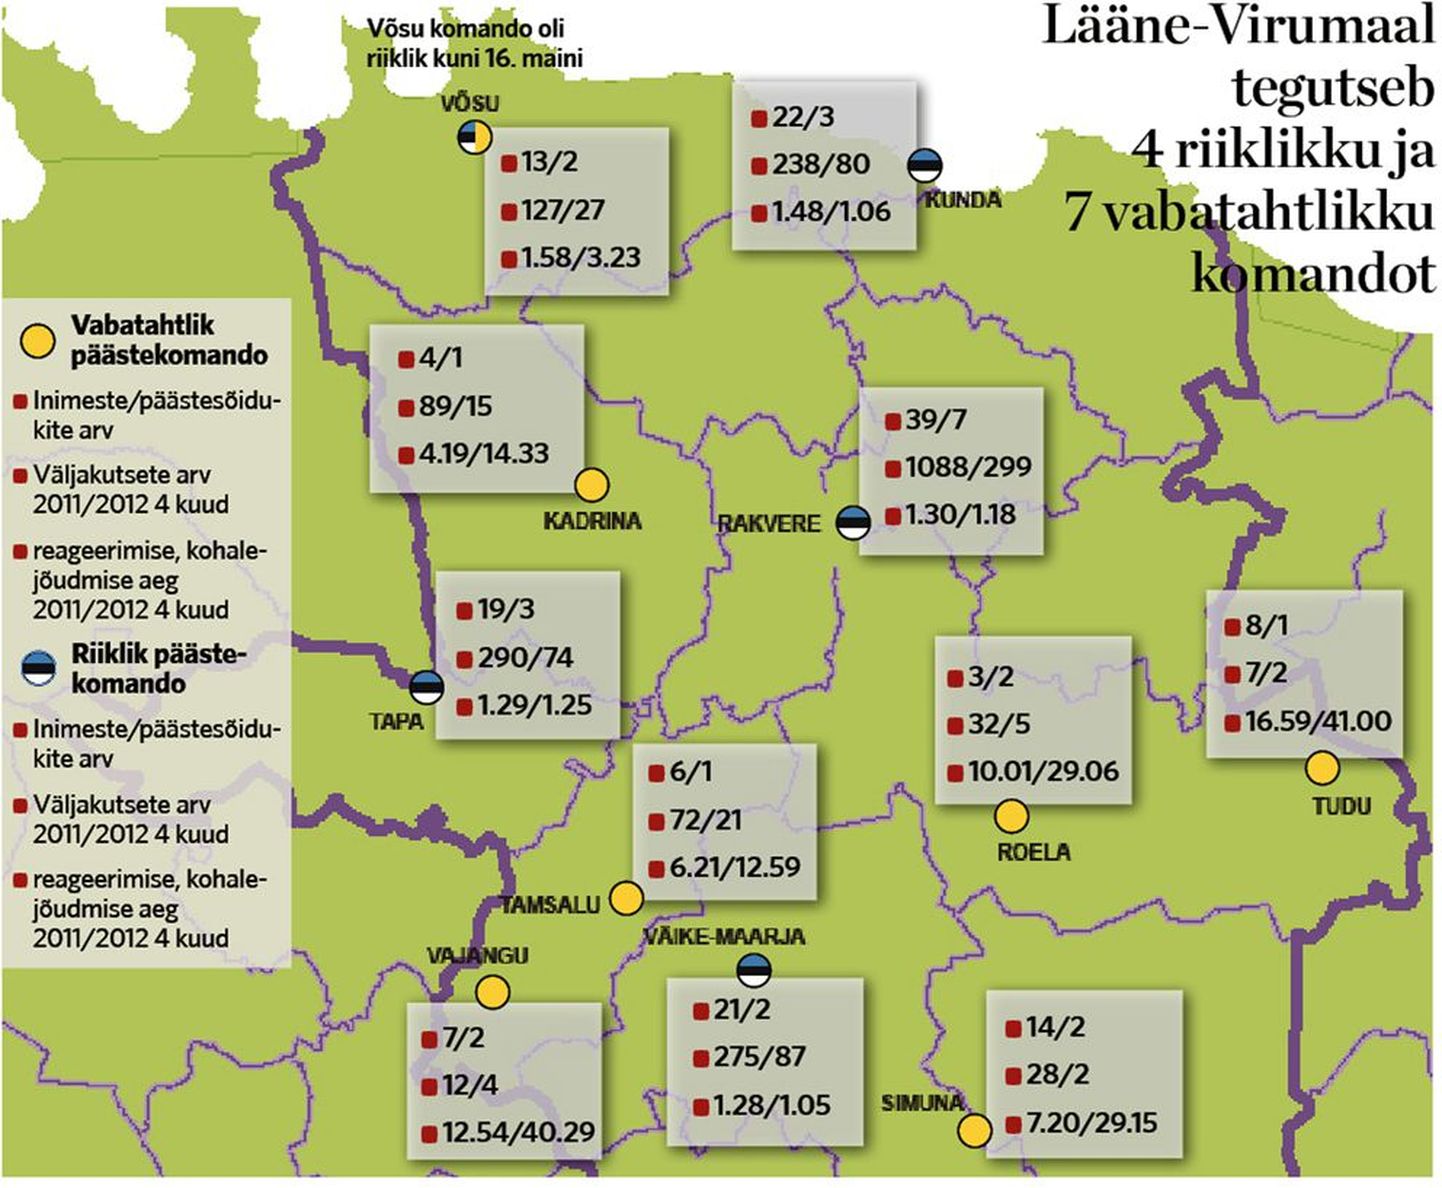 Lääne-Virumaal tegutseb 4 riiklikku ja 7 vabatahtlikku komandot.